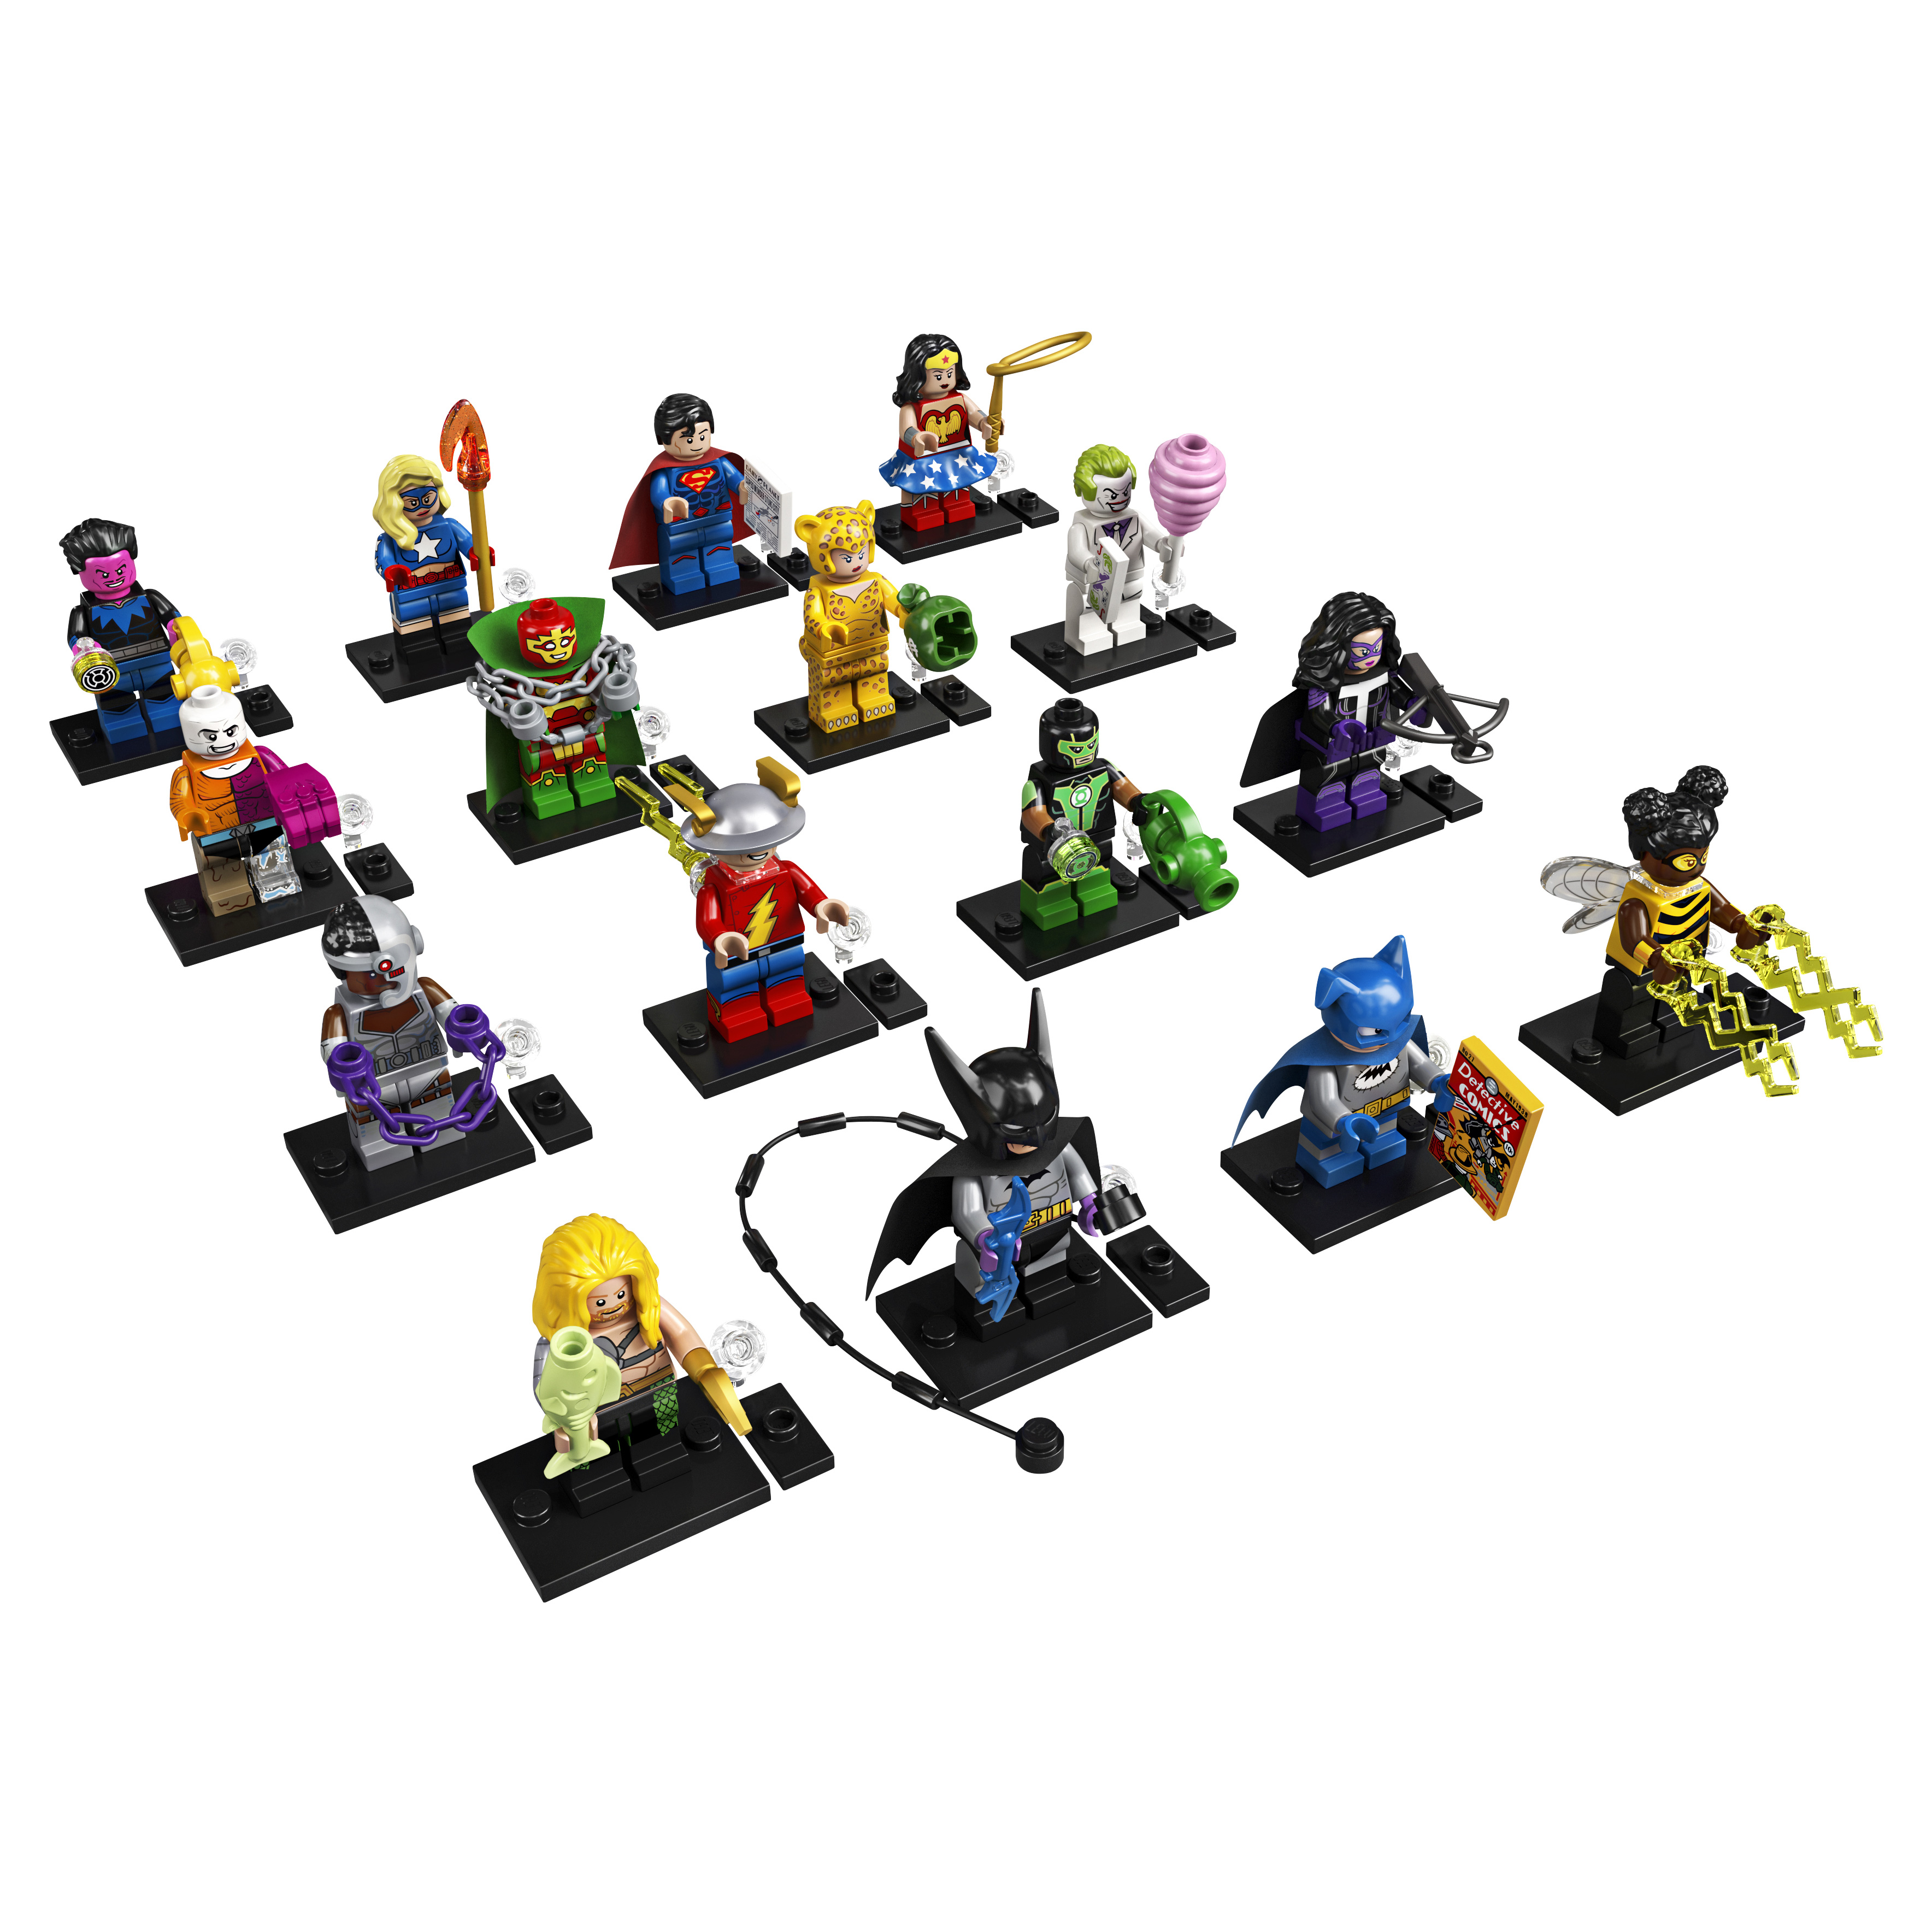 Конструктор LEGO Minifigures 71026 DC Super Heroes Series конструктор lego super heroes сражение с роботом лекса лютора 76097